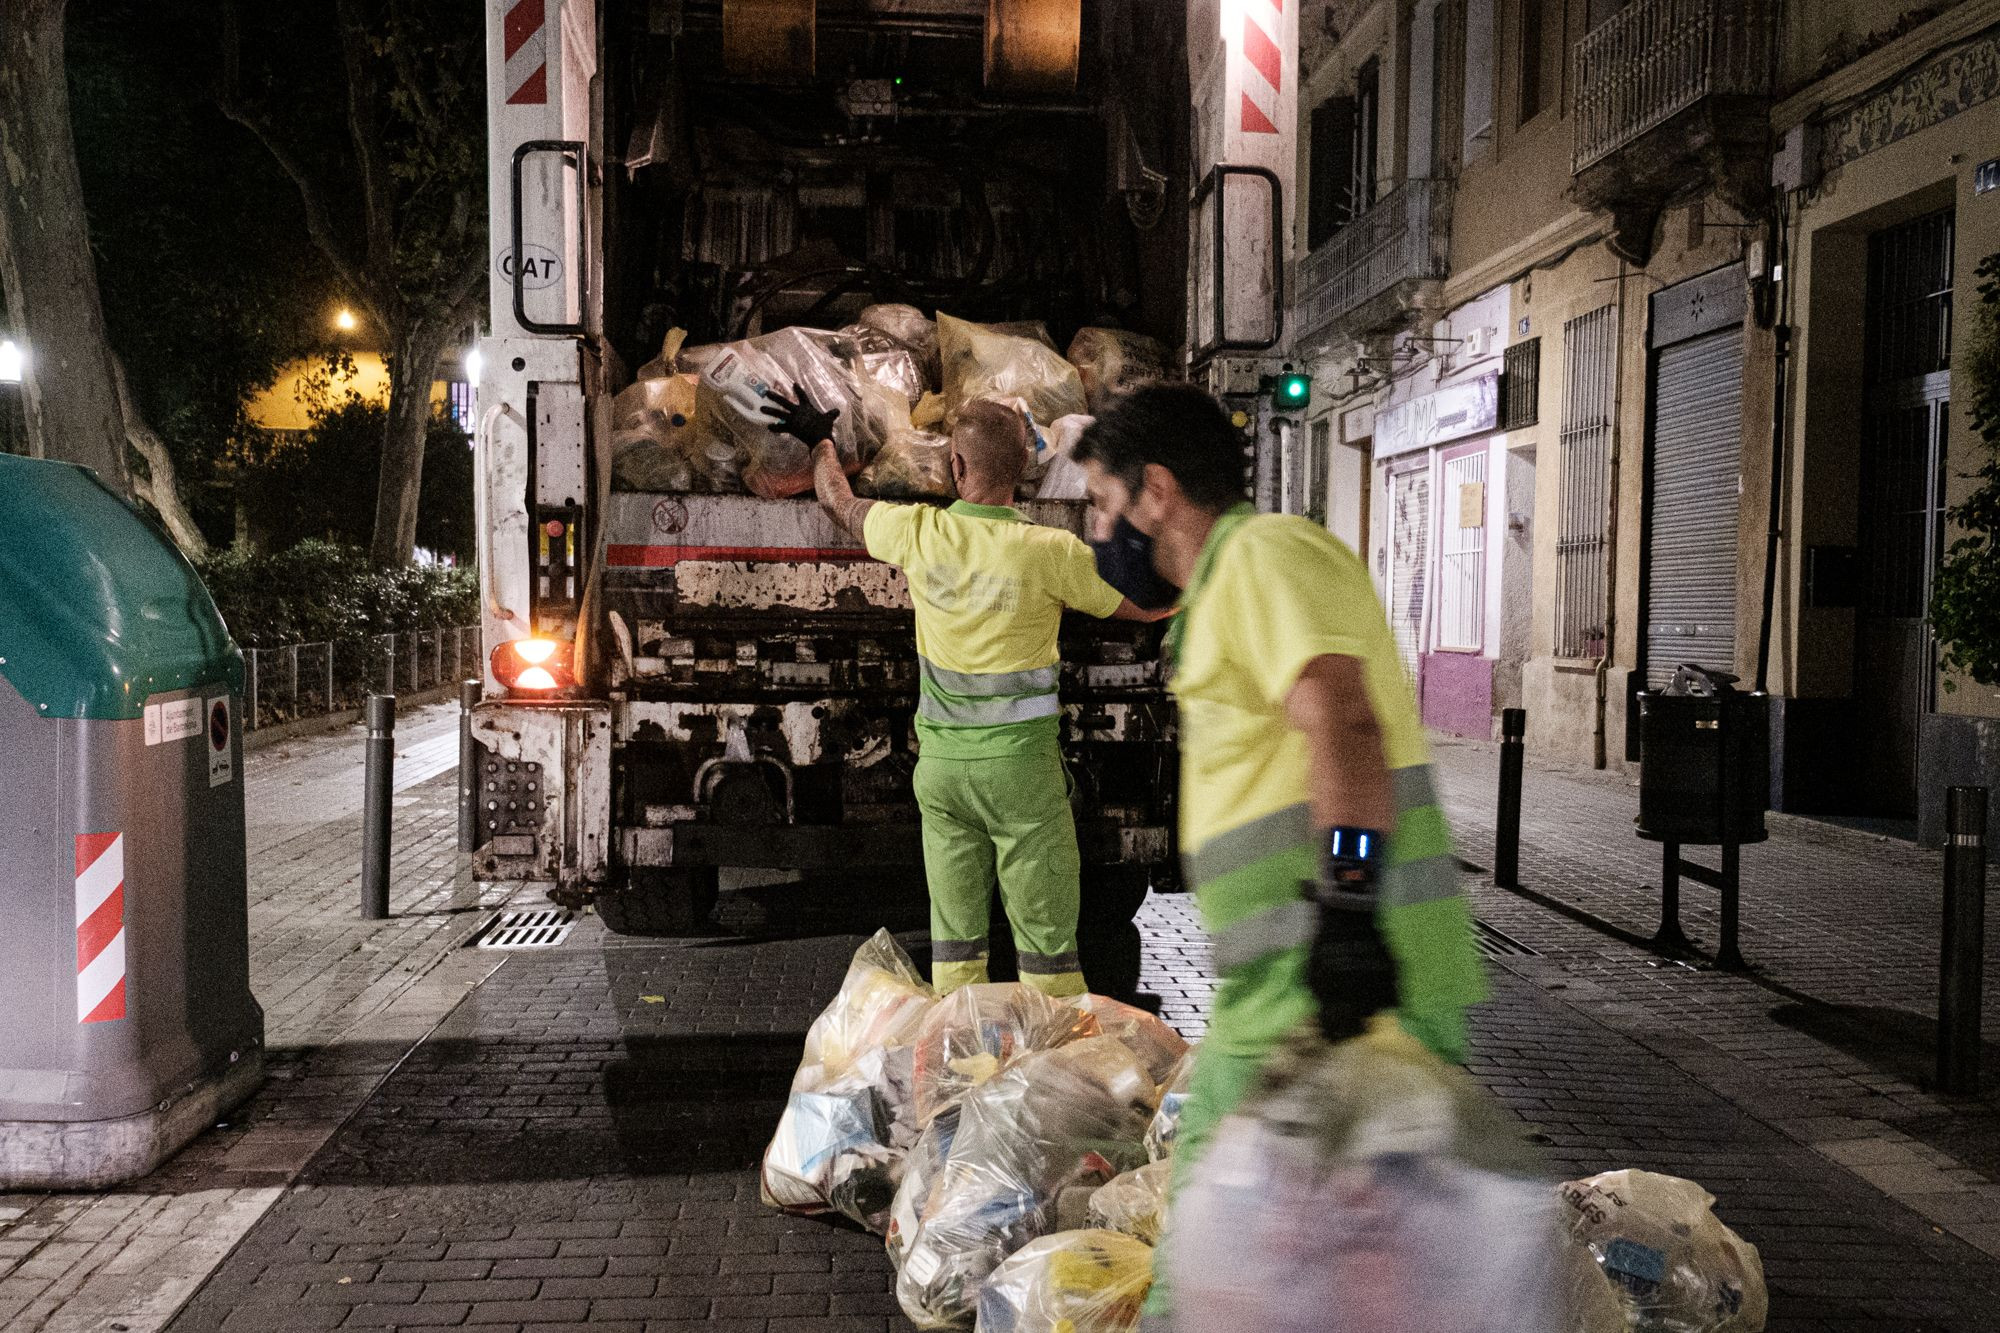 Recogida de las bolsas de basura que contienen plásticos, el pasado miércoles 8 de septiembre, en la calle Coroleu de Sant Andreu / PABLO MIRANZO